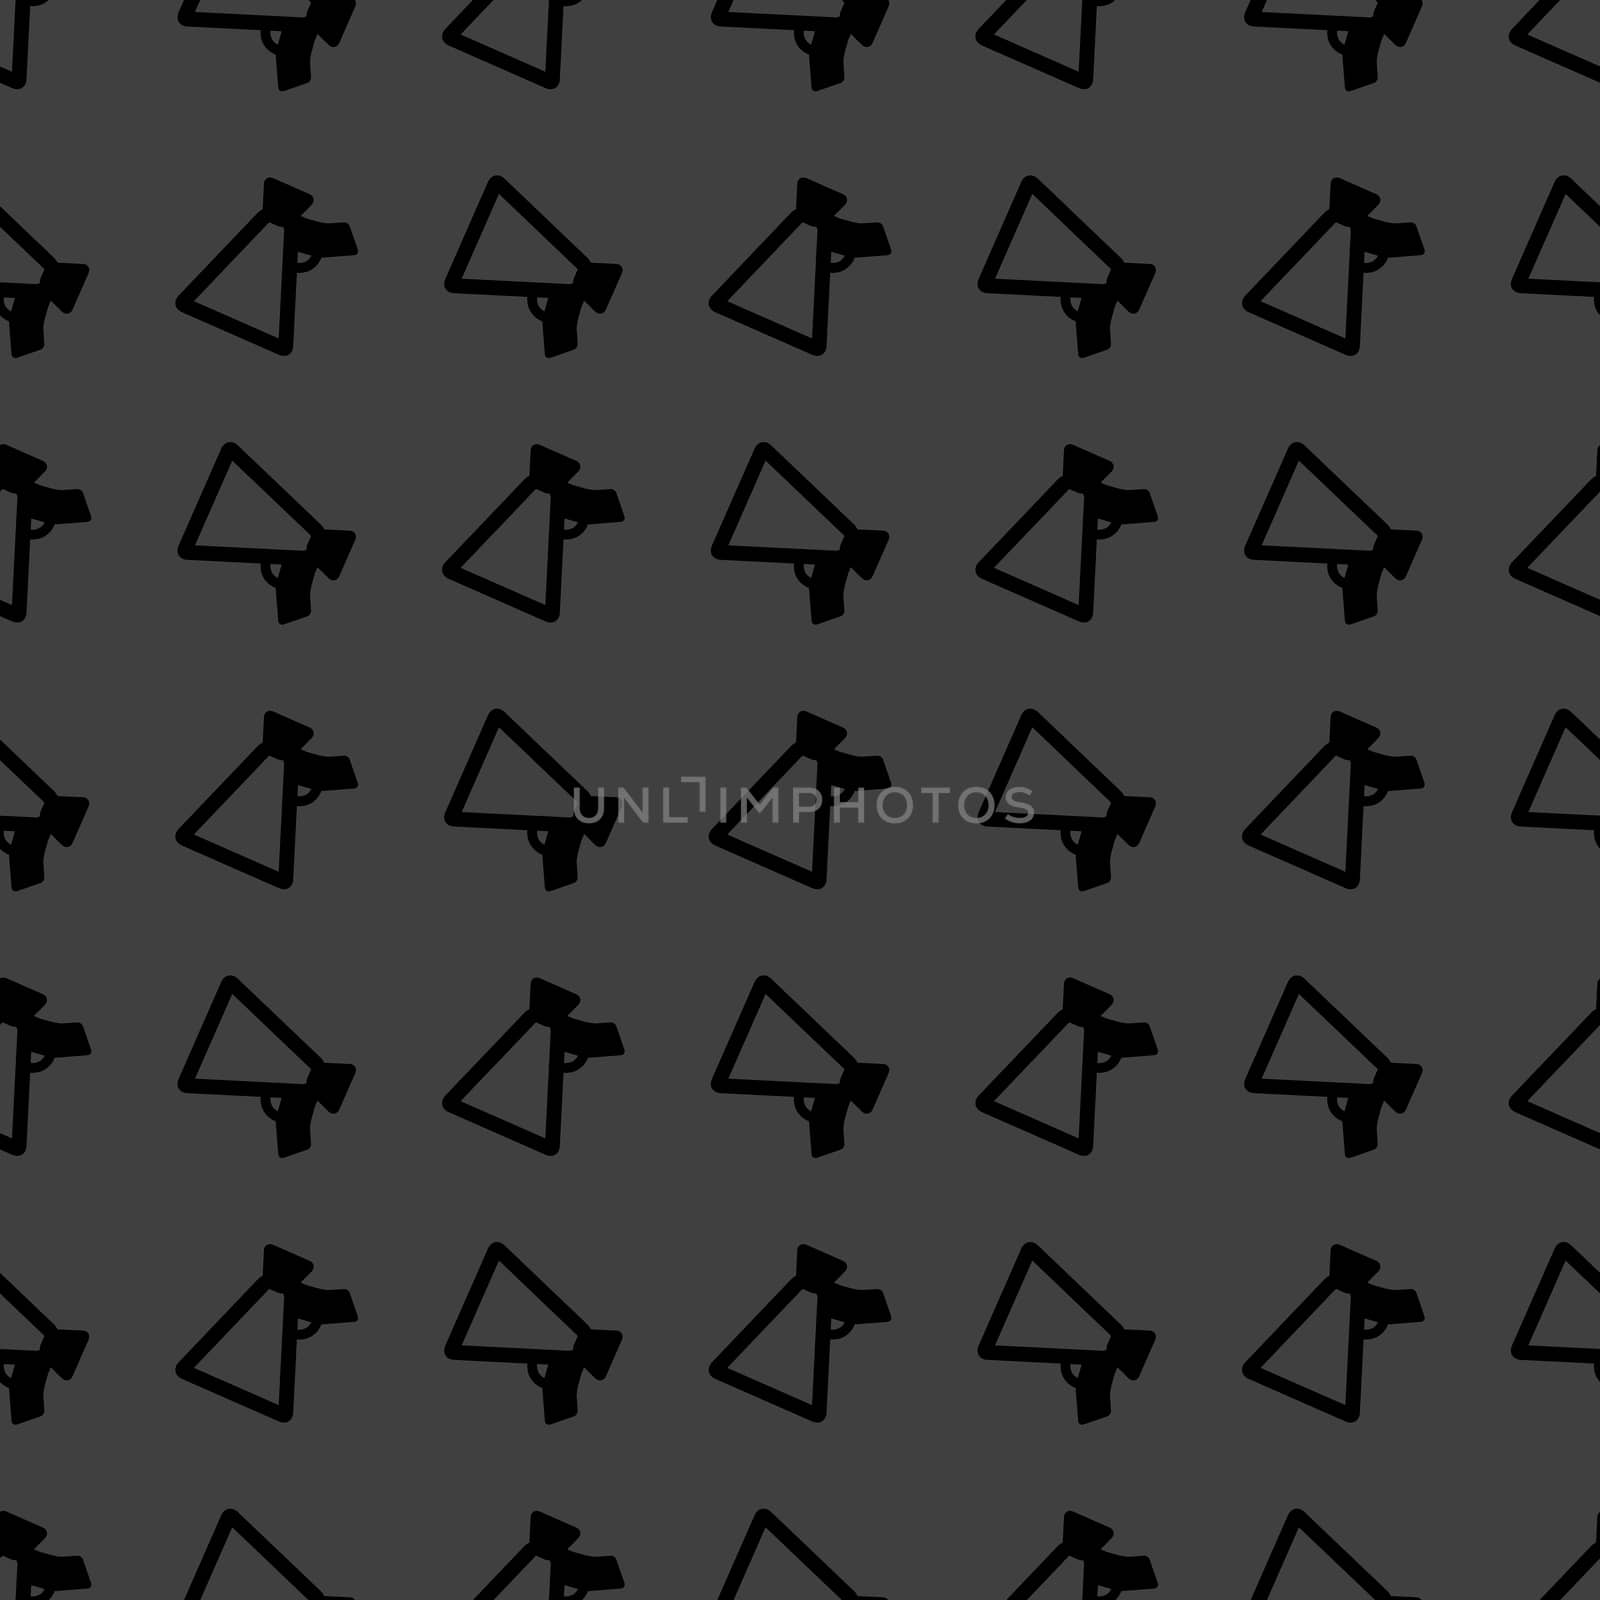 Mouthpiece. web icon. flat design. Seamless pattern. by serhii_lohvyniuk